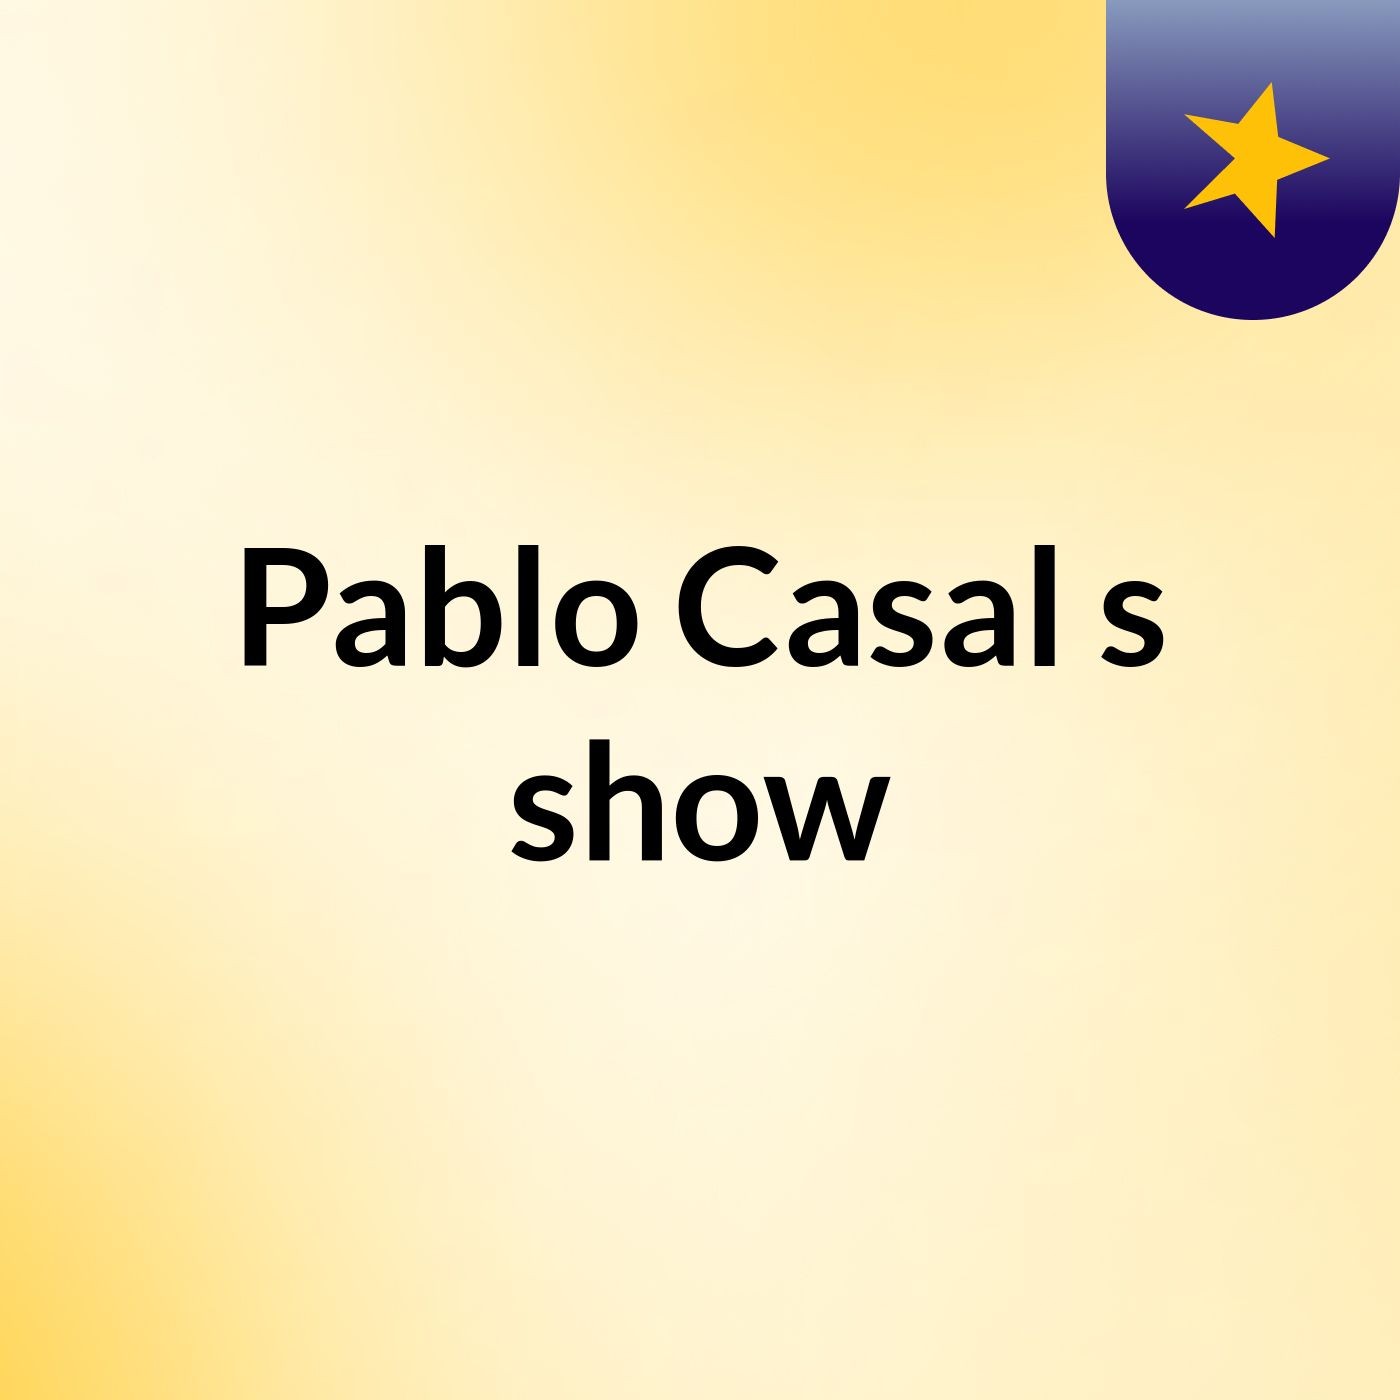 Pablo Casal's show